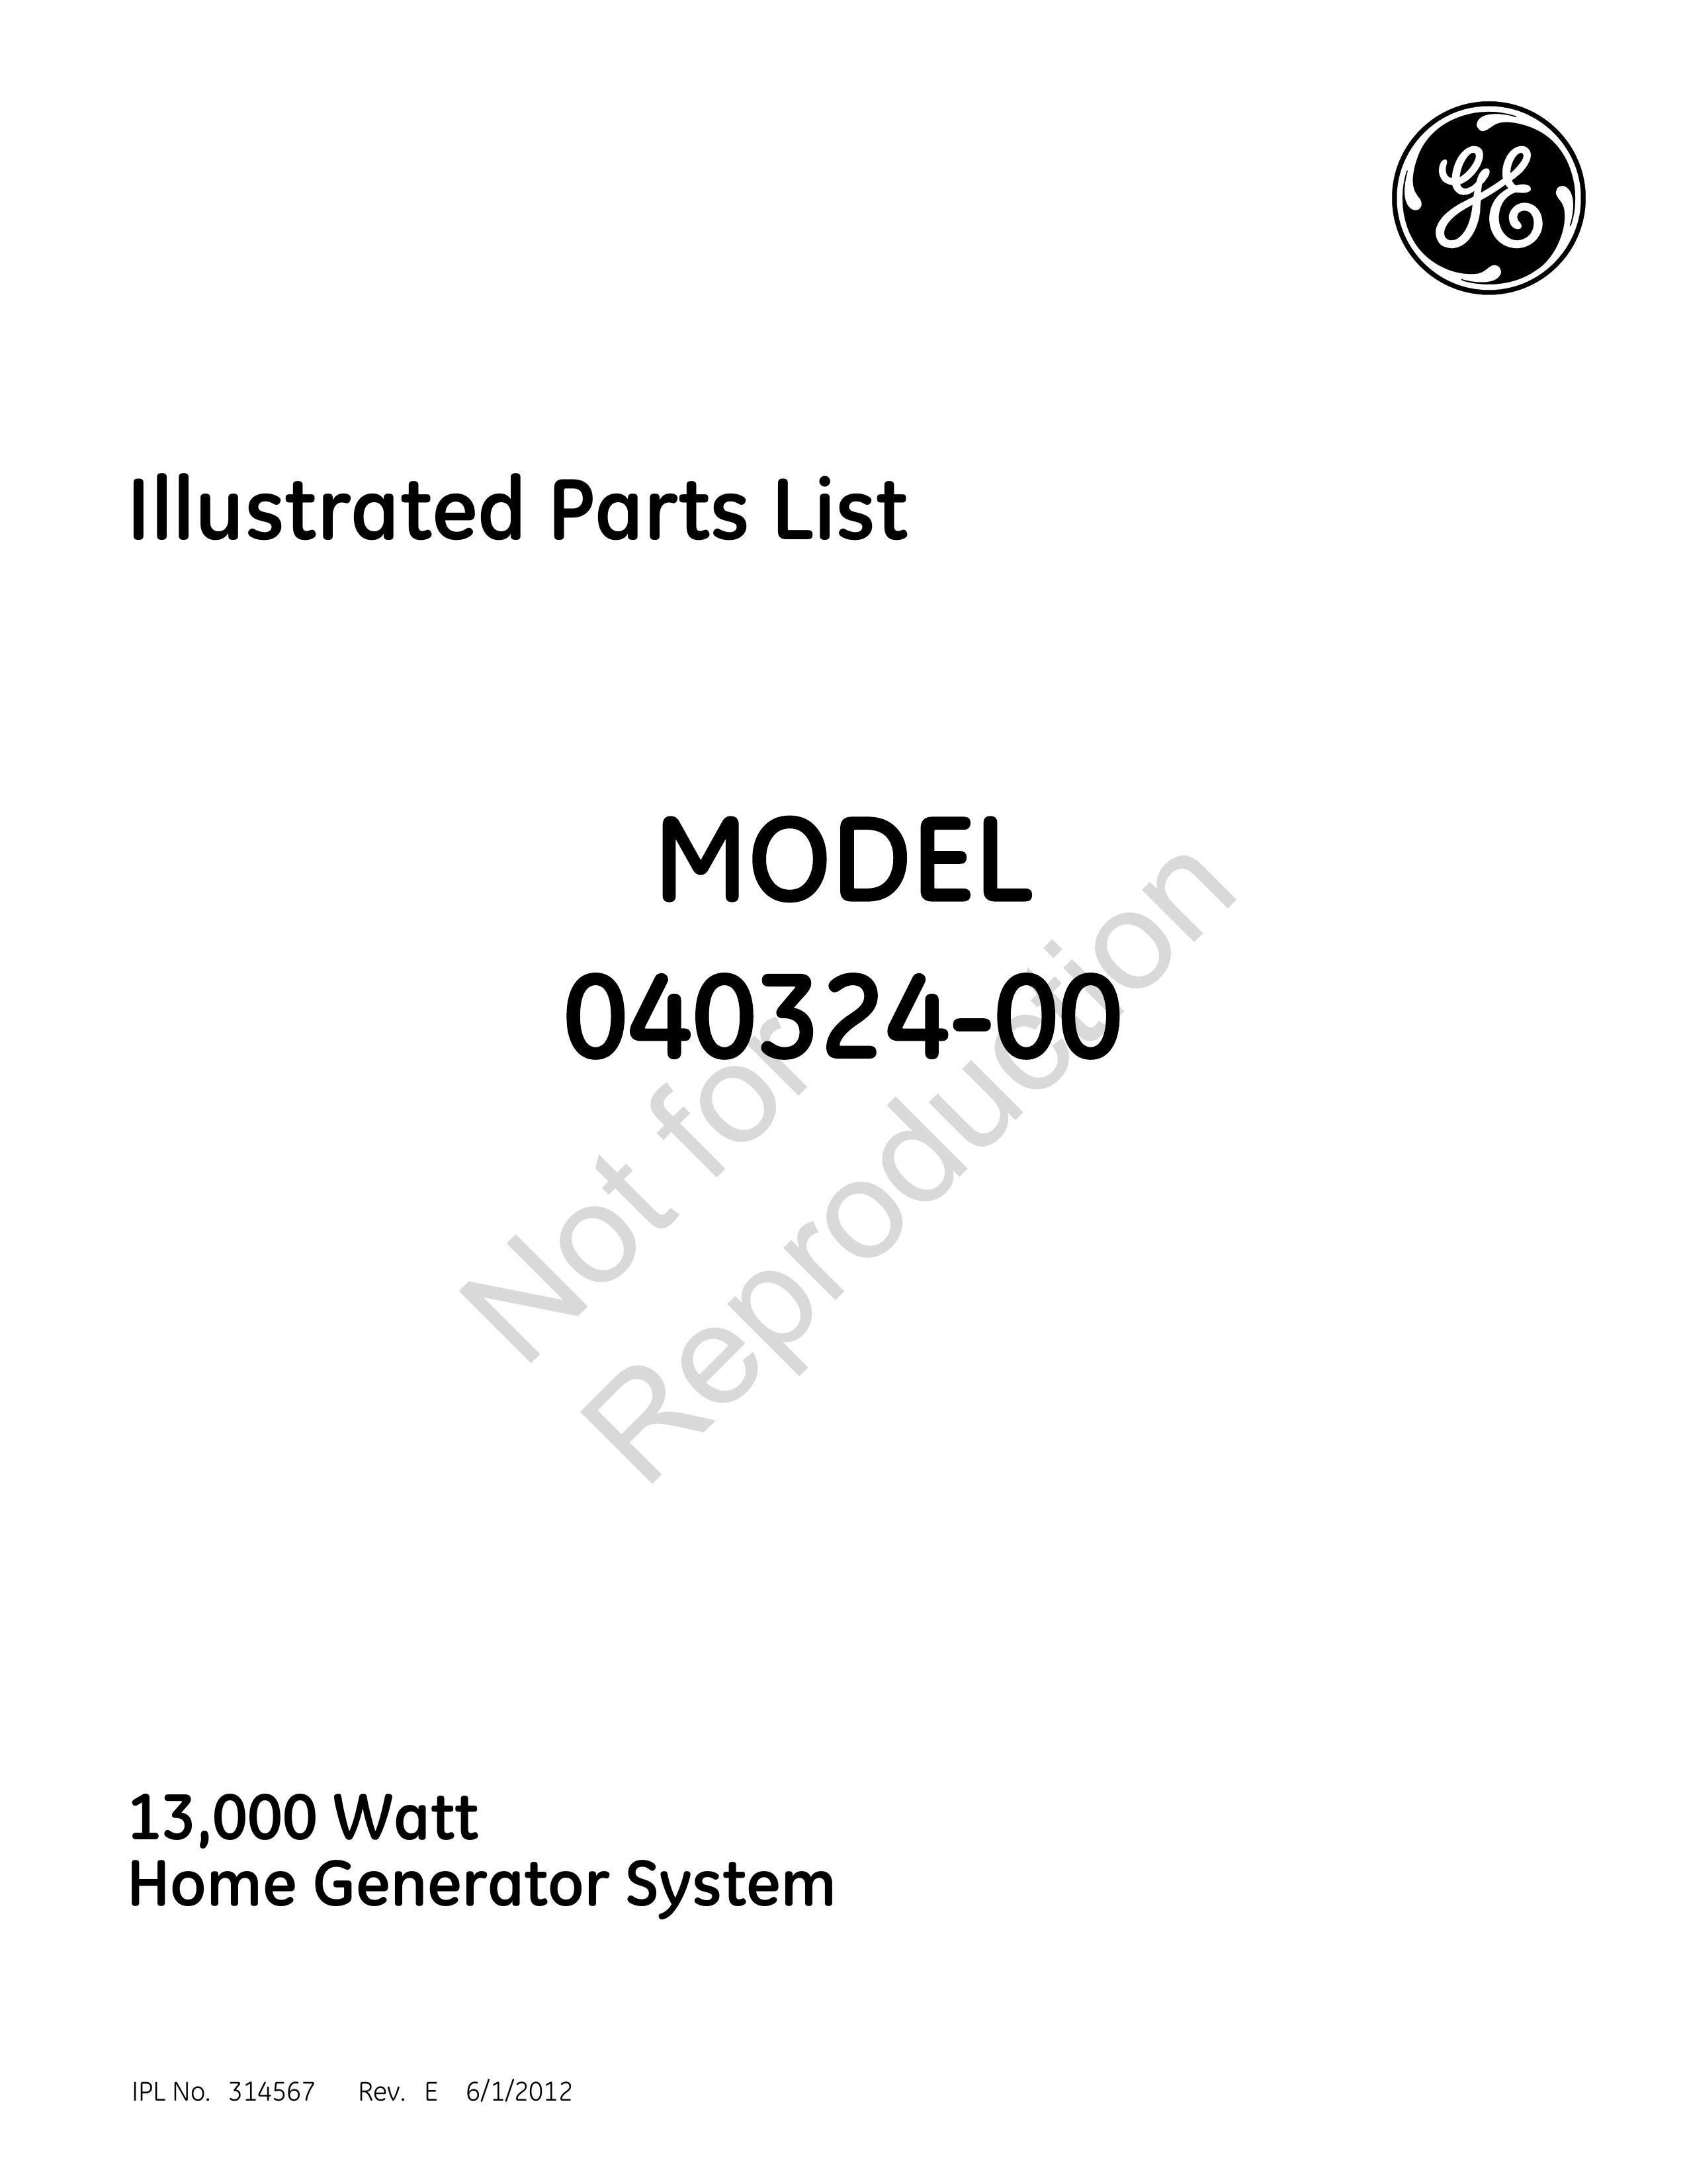 GE 040324-00 Portable Generator User Manual